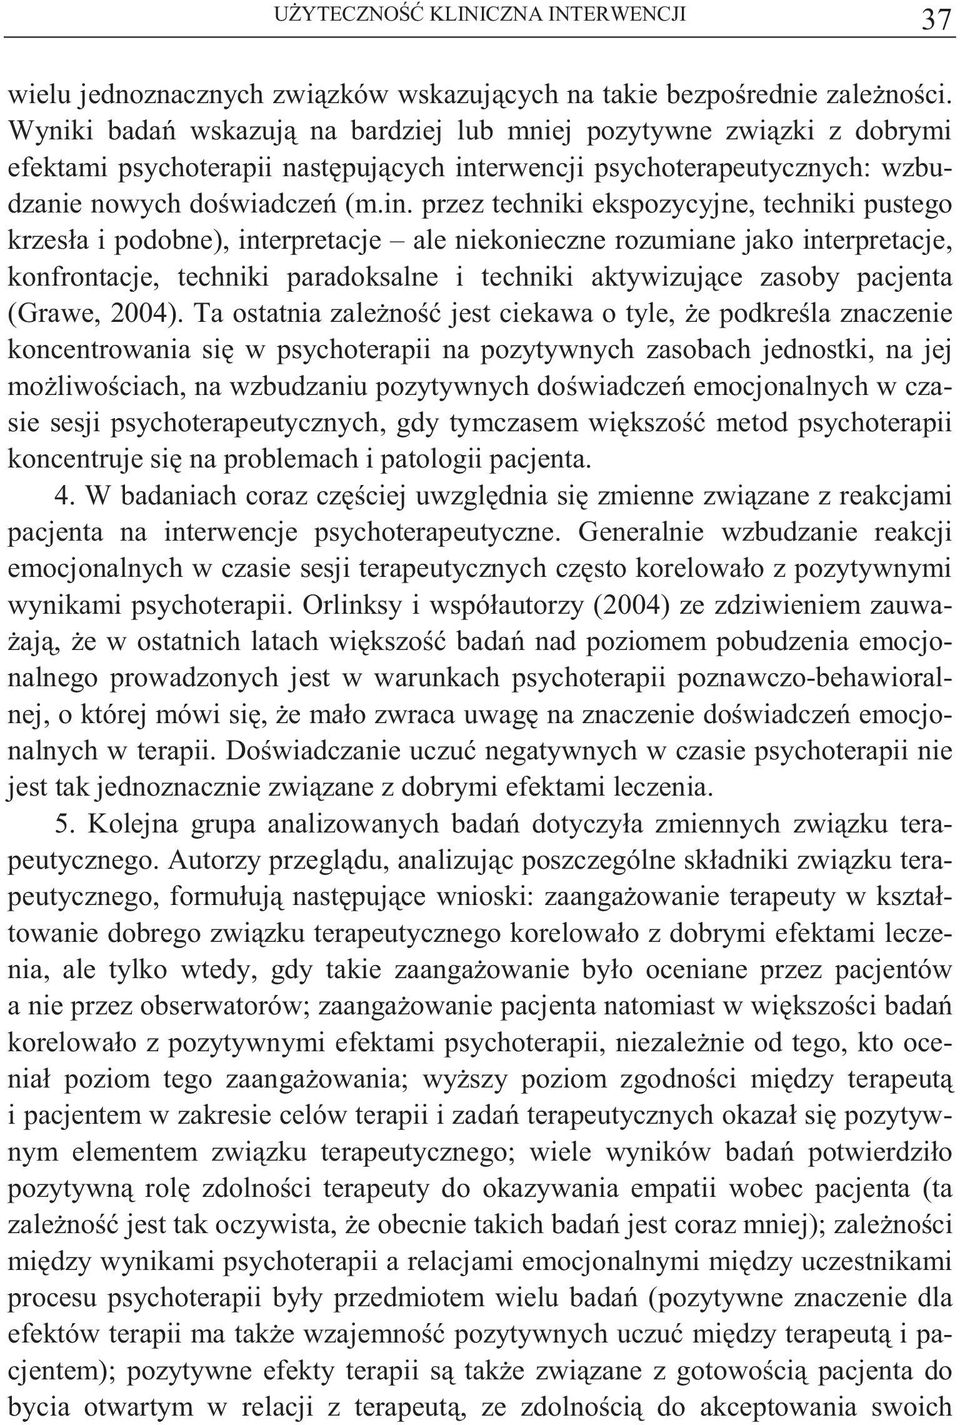 erwencji psychoterapeutycznych: wzbudzanie nowych do wiadcze (m.in.